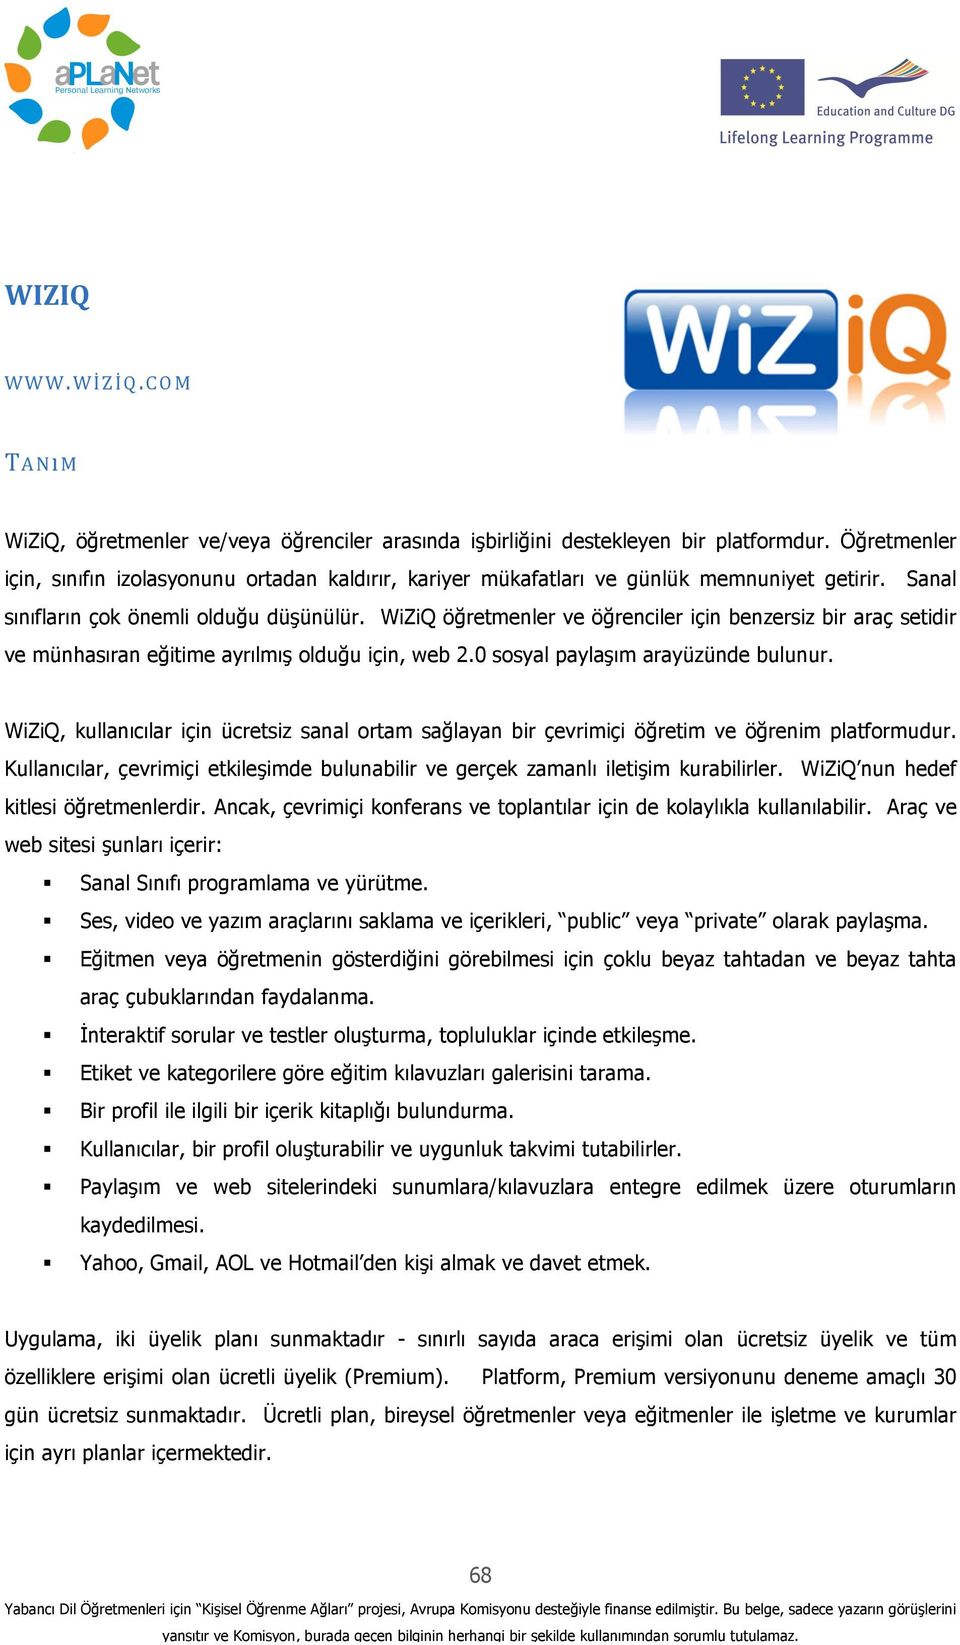 WiZiQ öğretmenler ve öğrenciler için benzersiz bir araç setidir ve münhasıran eğitime ayrılmış olduğu için, web 2.0 sosyal paylaşım arayüzünde bulunur.